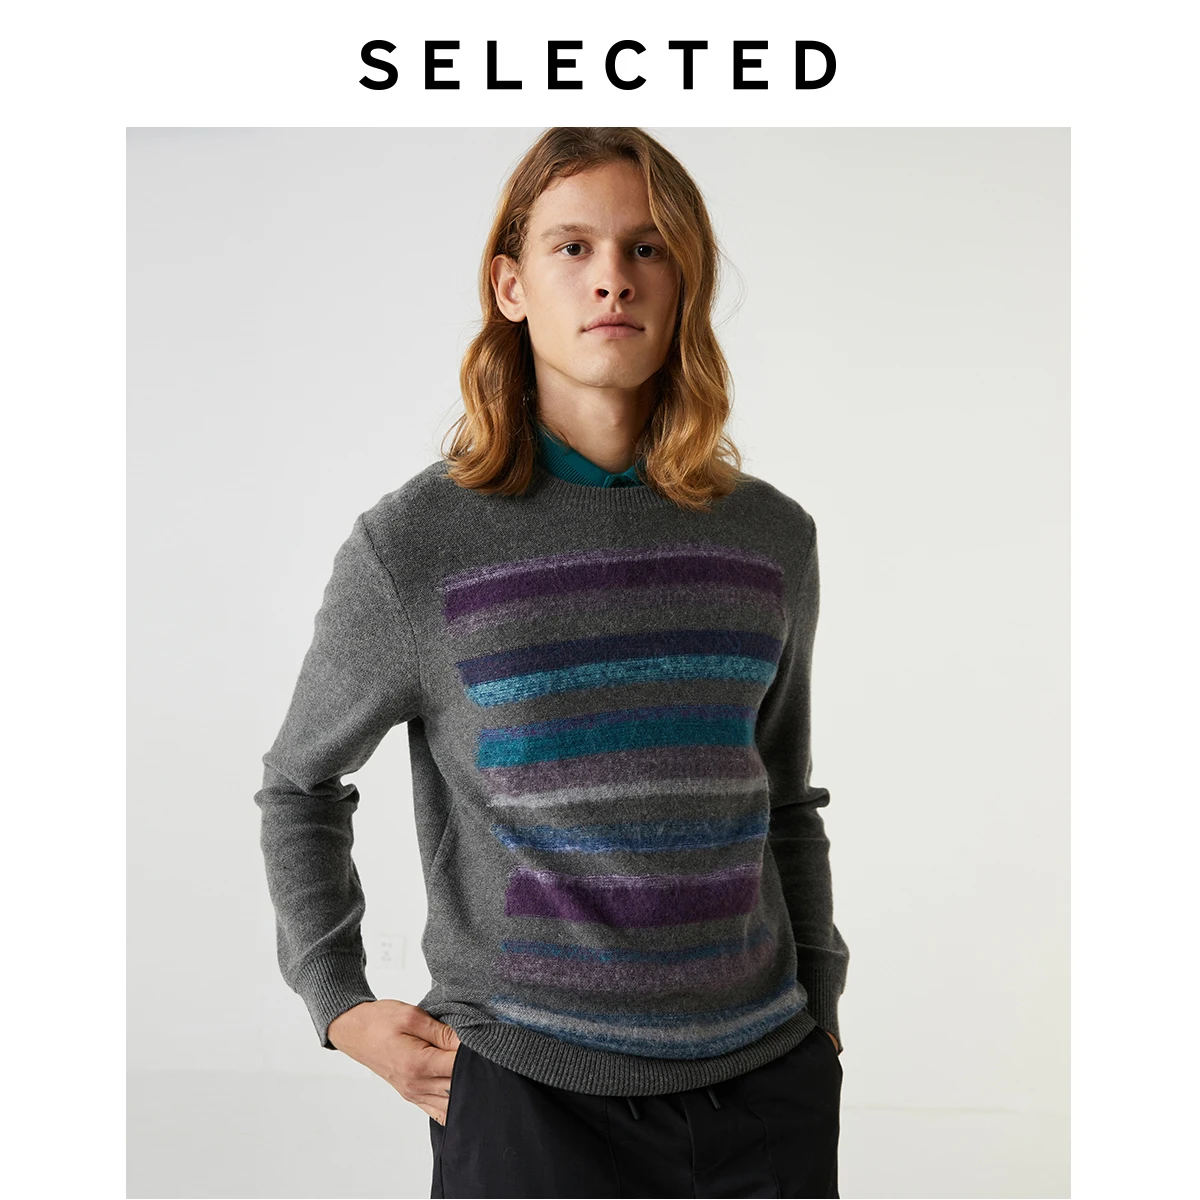 Выбранные Для мужчин разноцветная полоска Вязание контрастная строчка шерстяной свитер S | 419425511 от AliExpress RU&CIS NEW